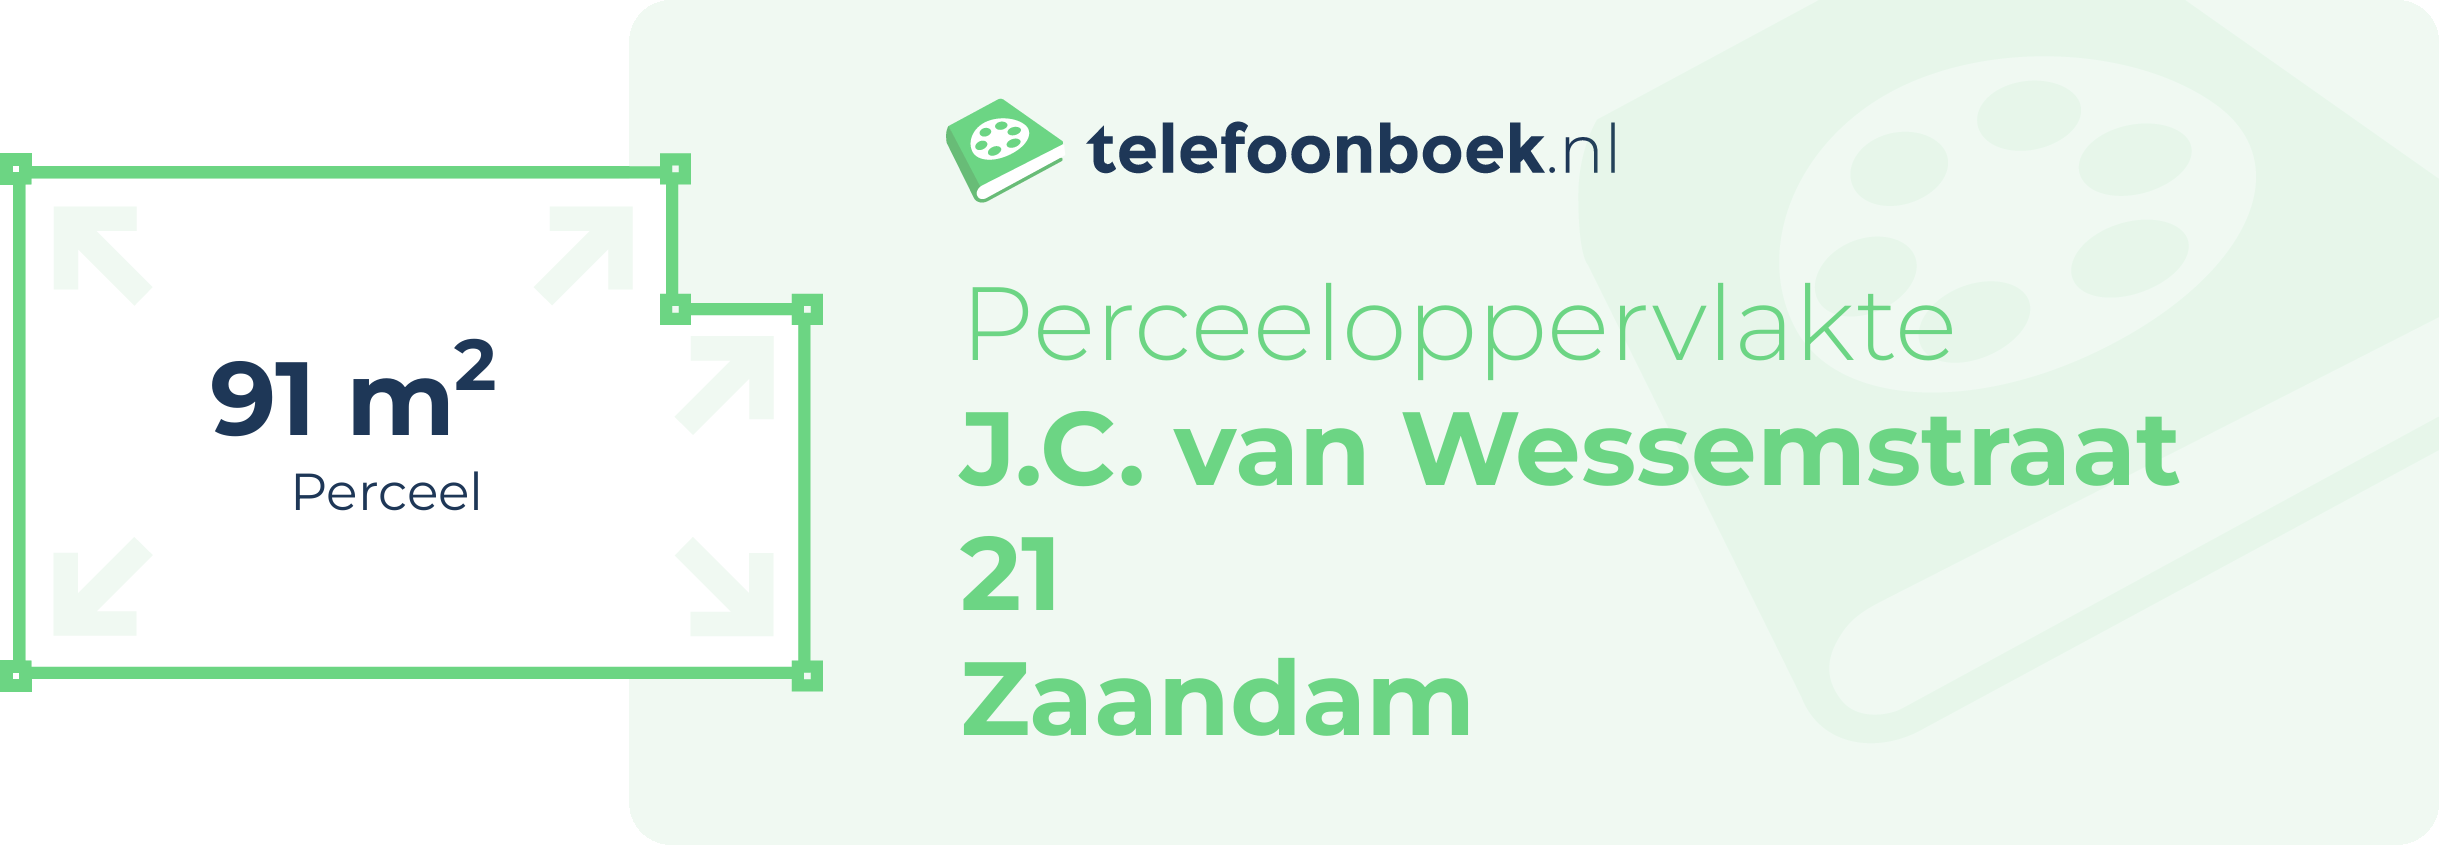 Perceeloppervlakte J.C. Van Wessemstraat 21 Zaandam